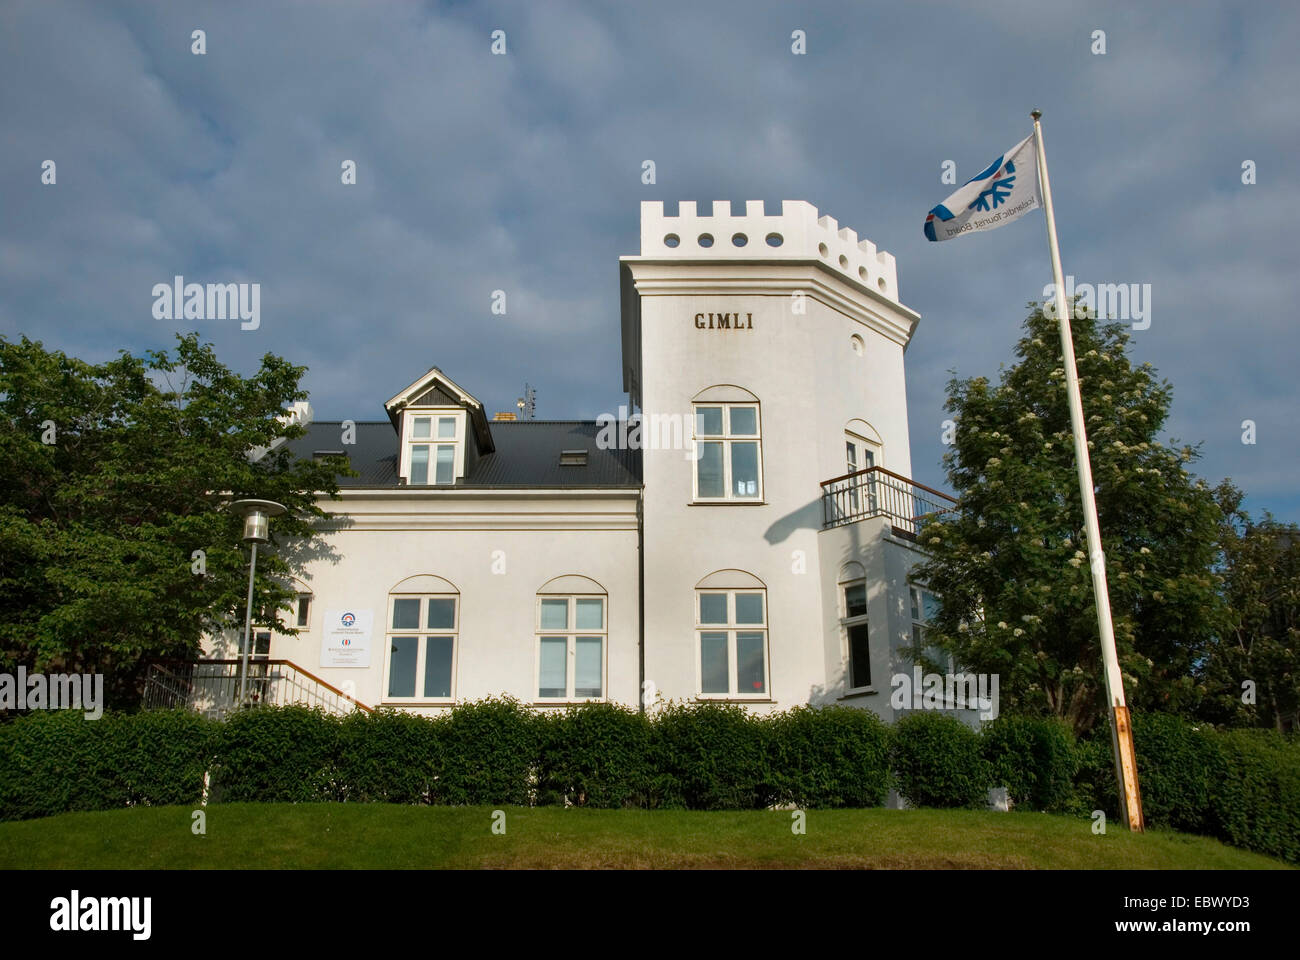 Gimil-maison à partir de 1905, l'office de tourisme islandais, Islande, Reykjavik Banque D'Images